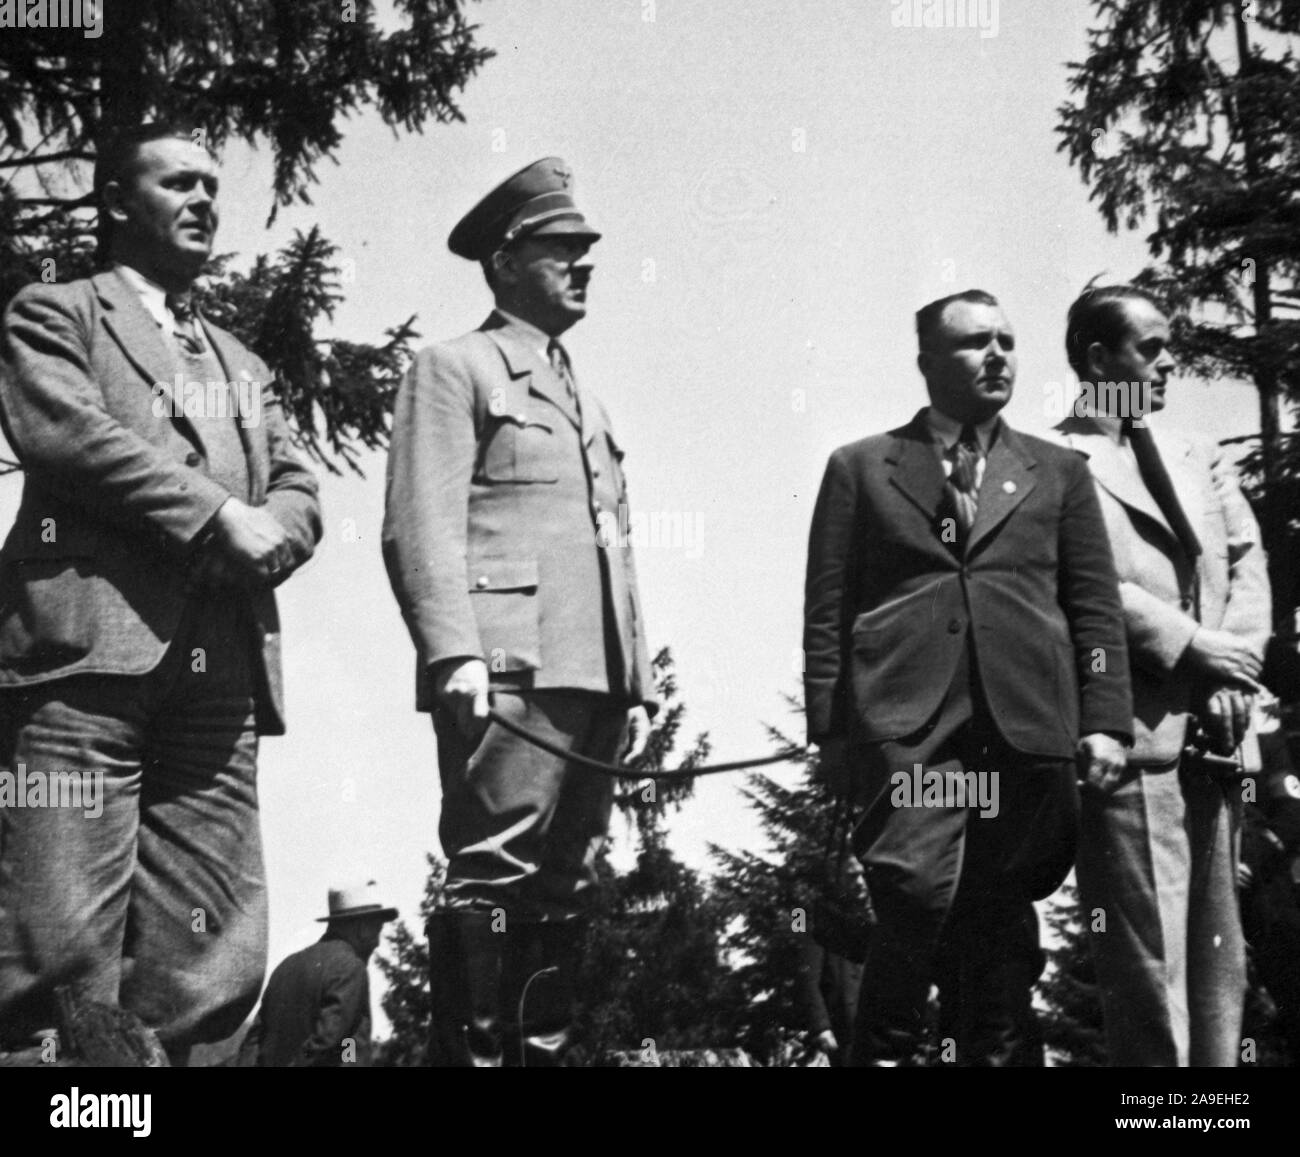 Eva Braun Sammlung (dvadvadaset) - Schatz, Bormann, Speer mit Adolf Hitler Ca. 1930s Stockfoto